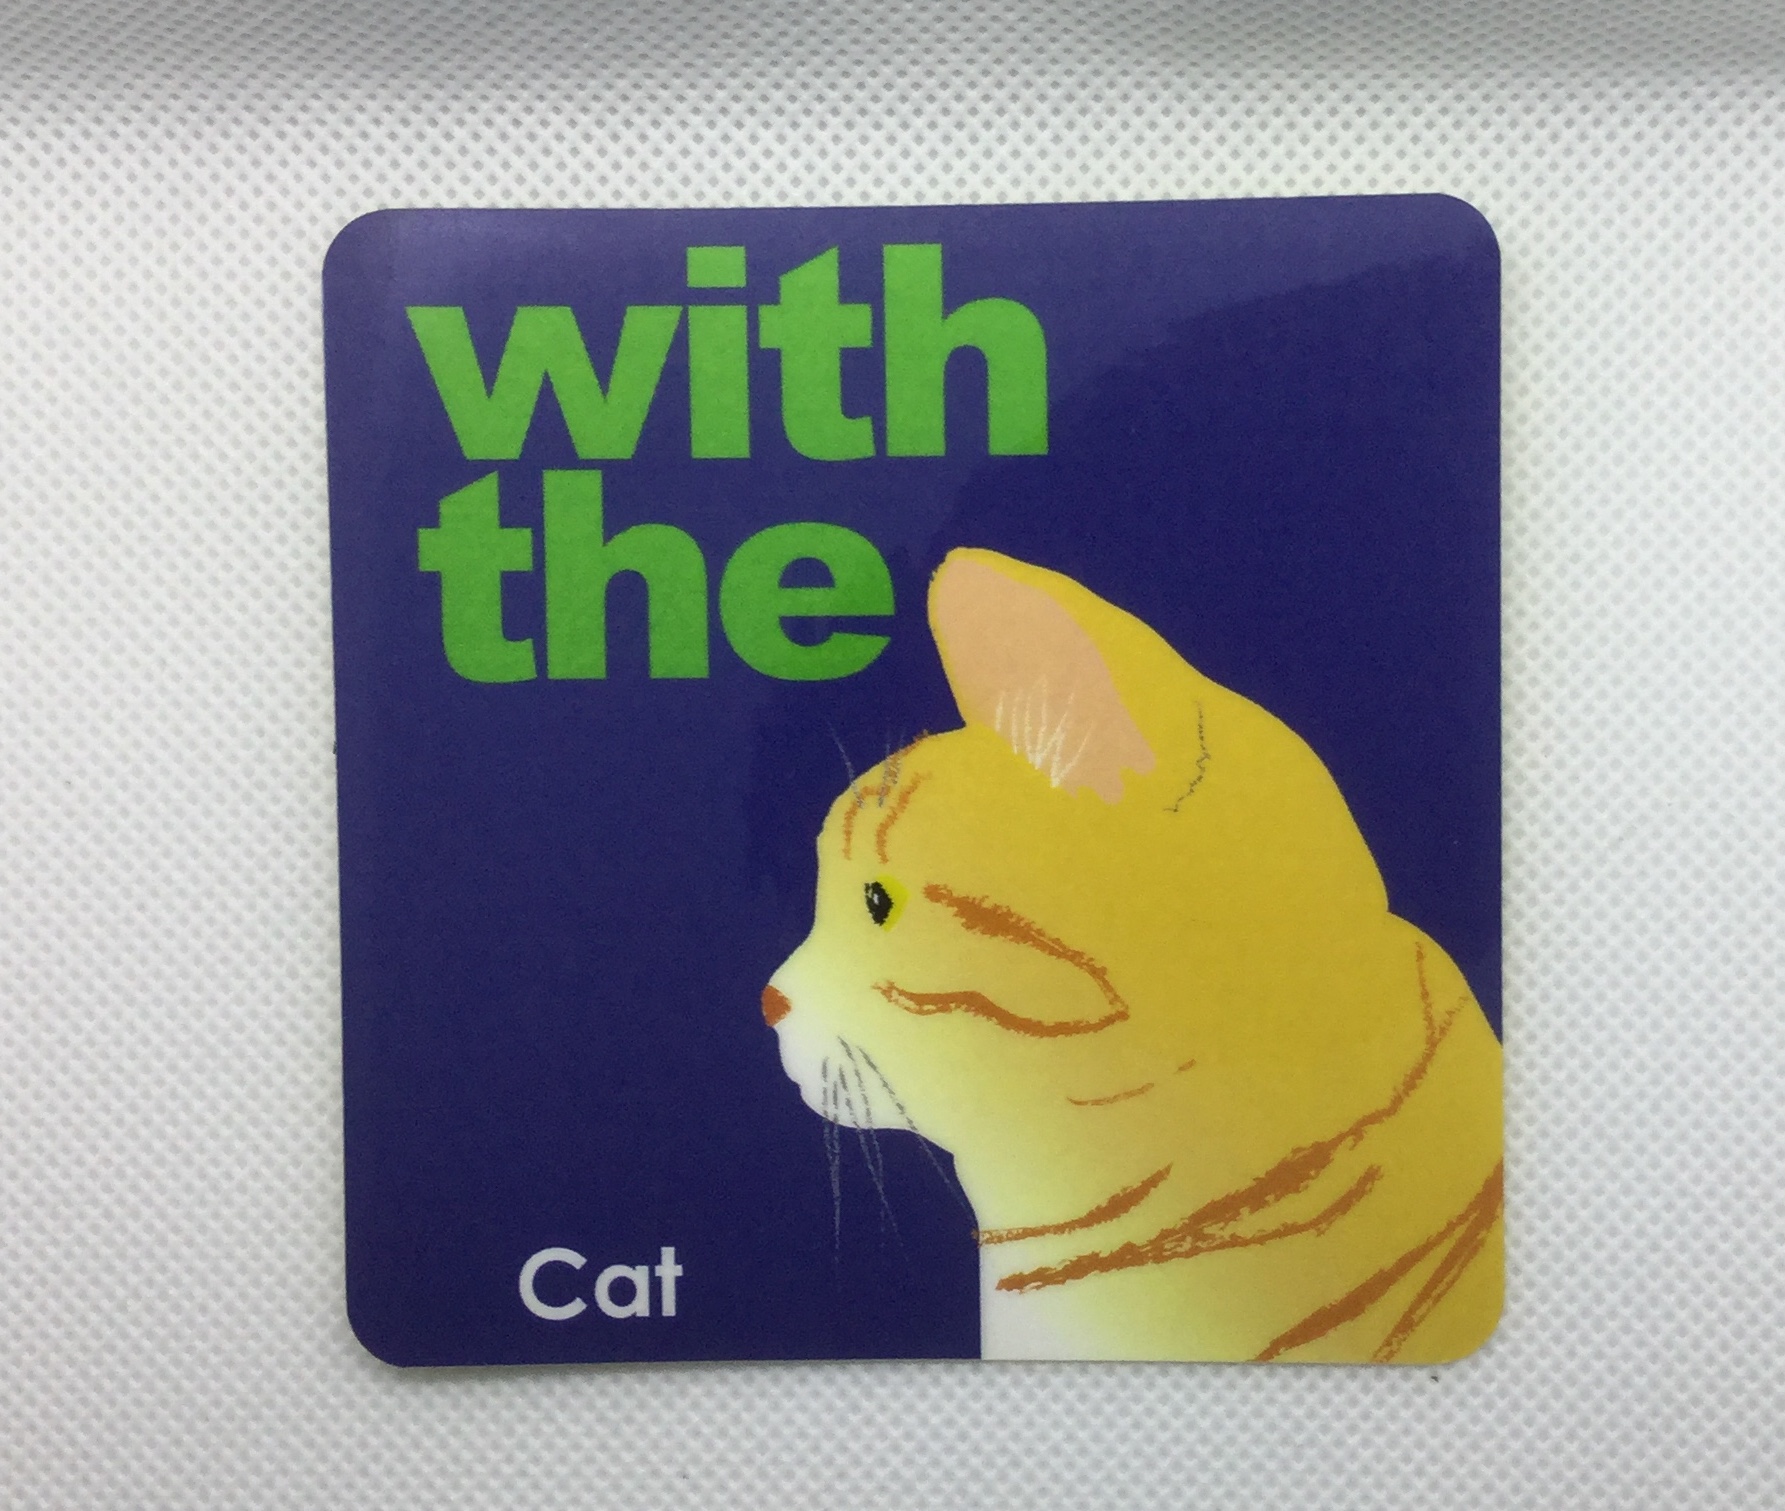 茶トラ 横顔 ステッカー Cat In Car 玄関 車 キャリーバッグ Iichi ハンドメイド クラフト作品 手仕事品の通販